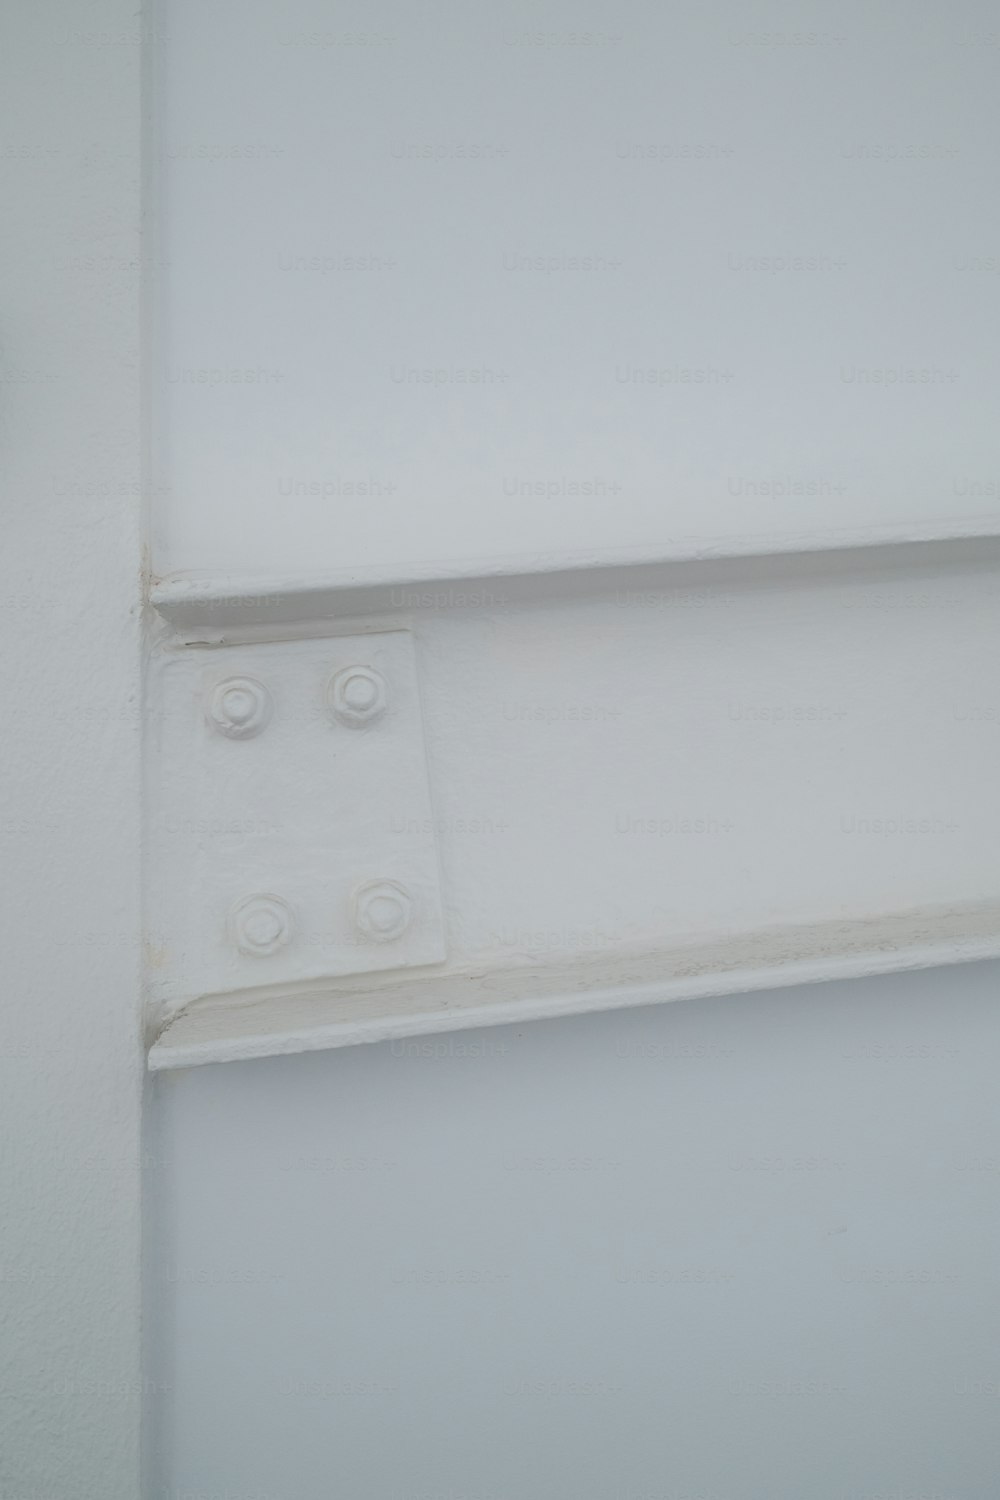 um close up de um interruptor de luz em uma parede